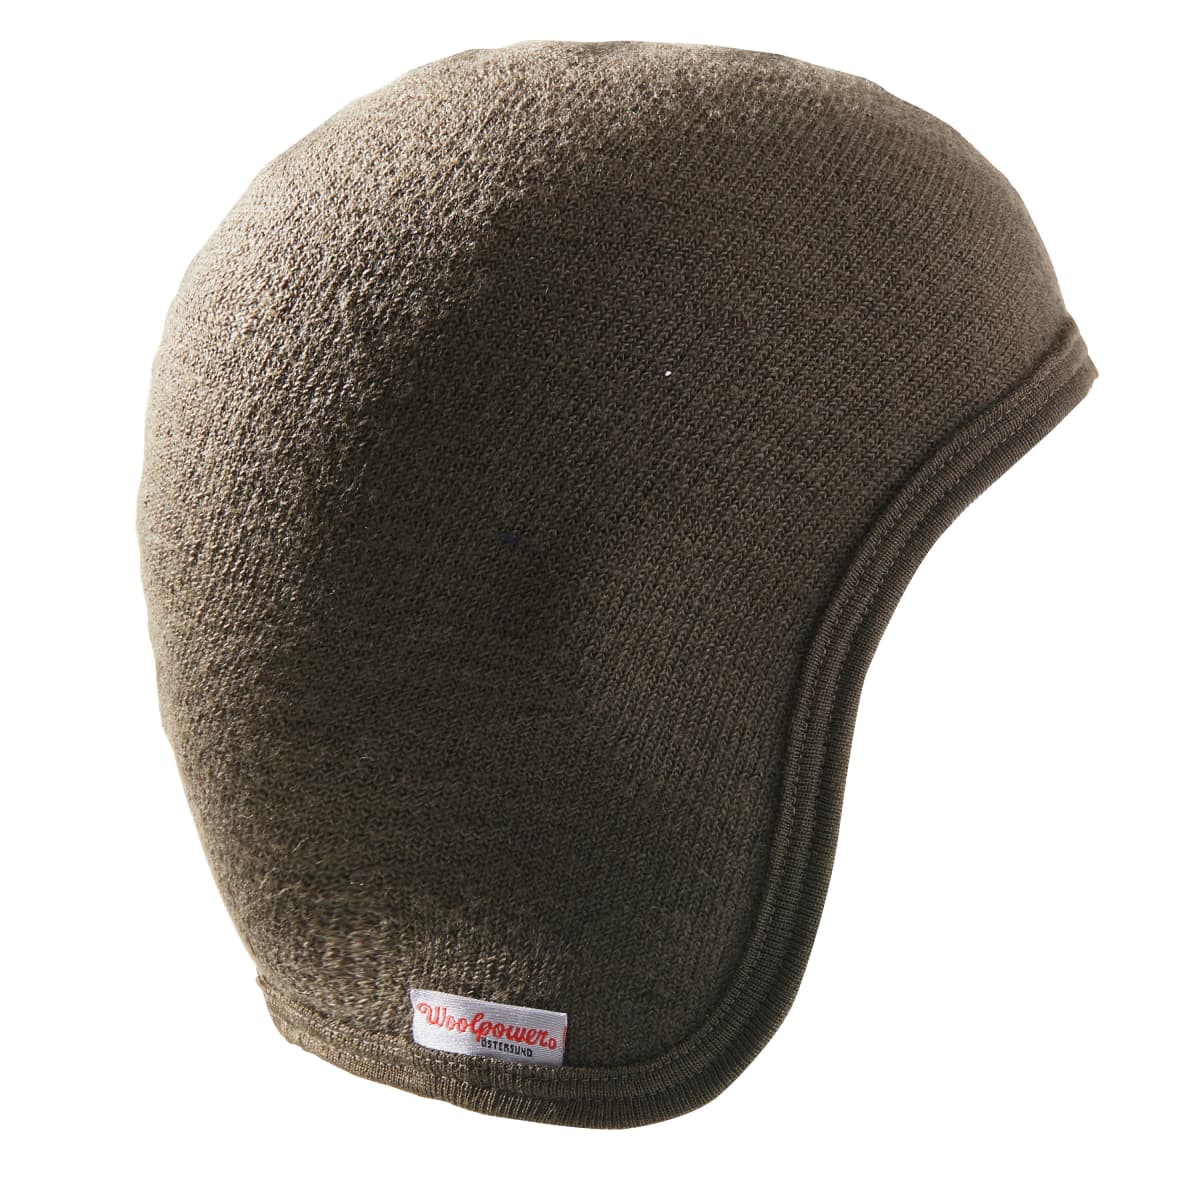 Woolpower Helmet Liner Cap